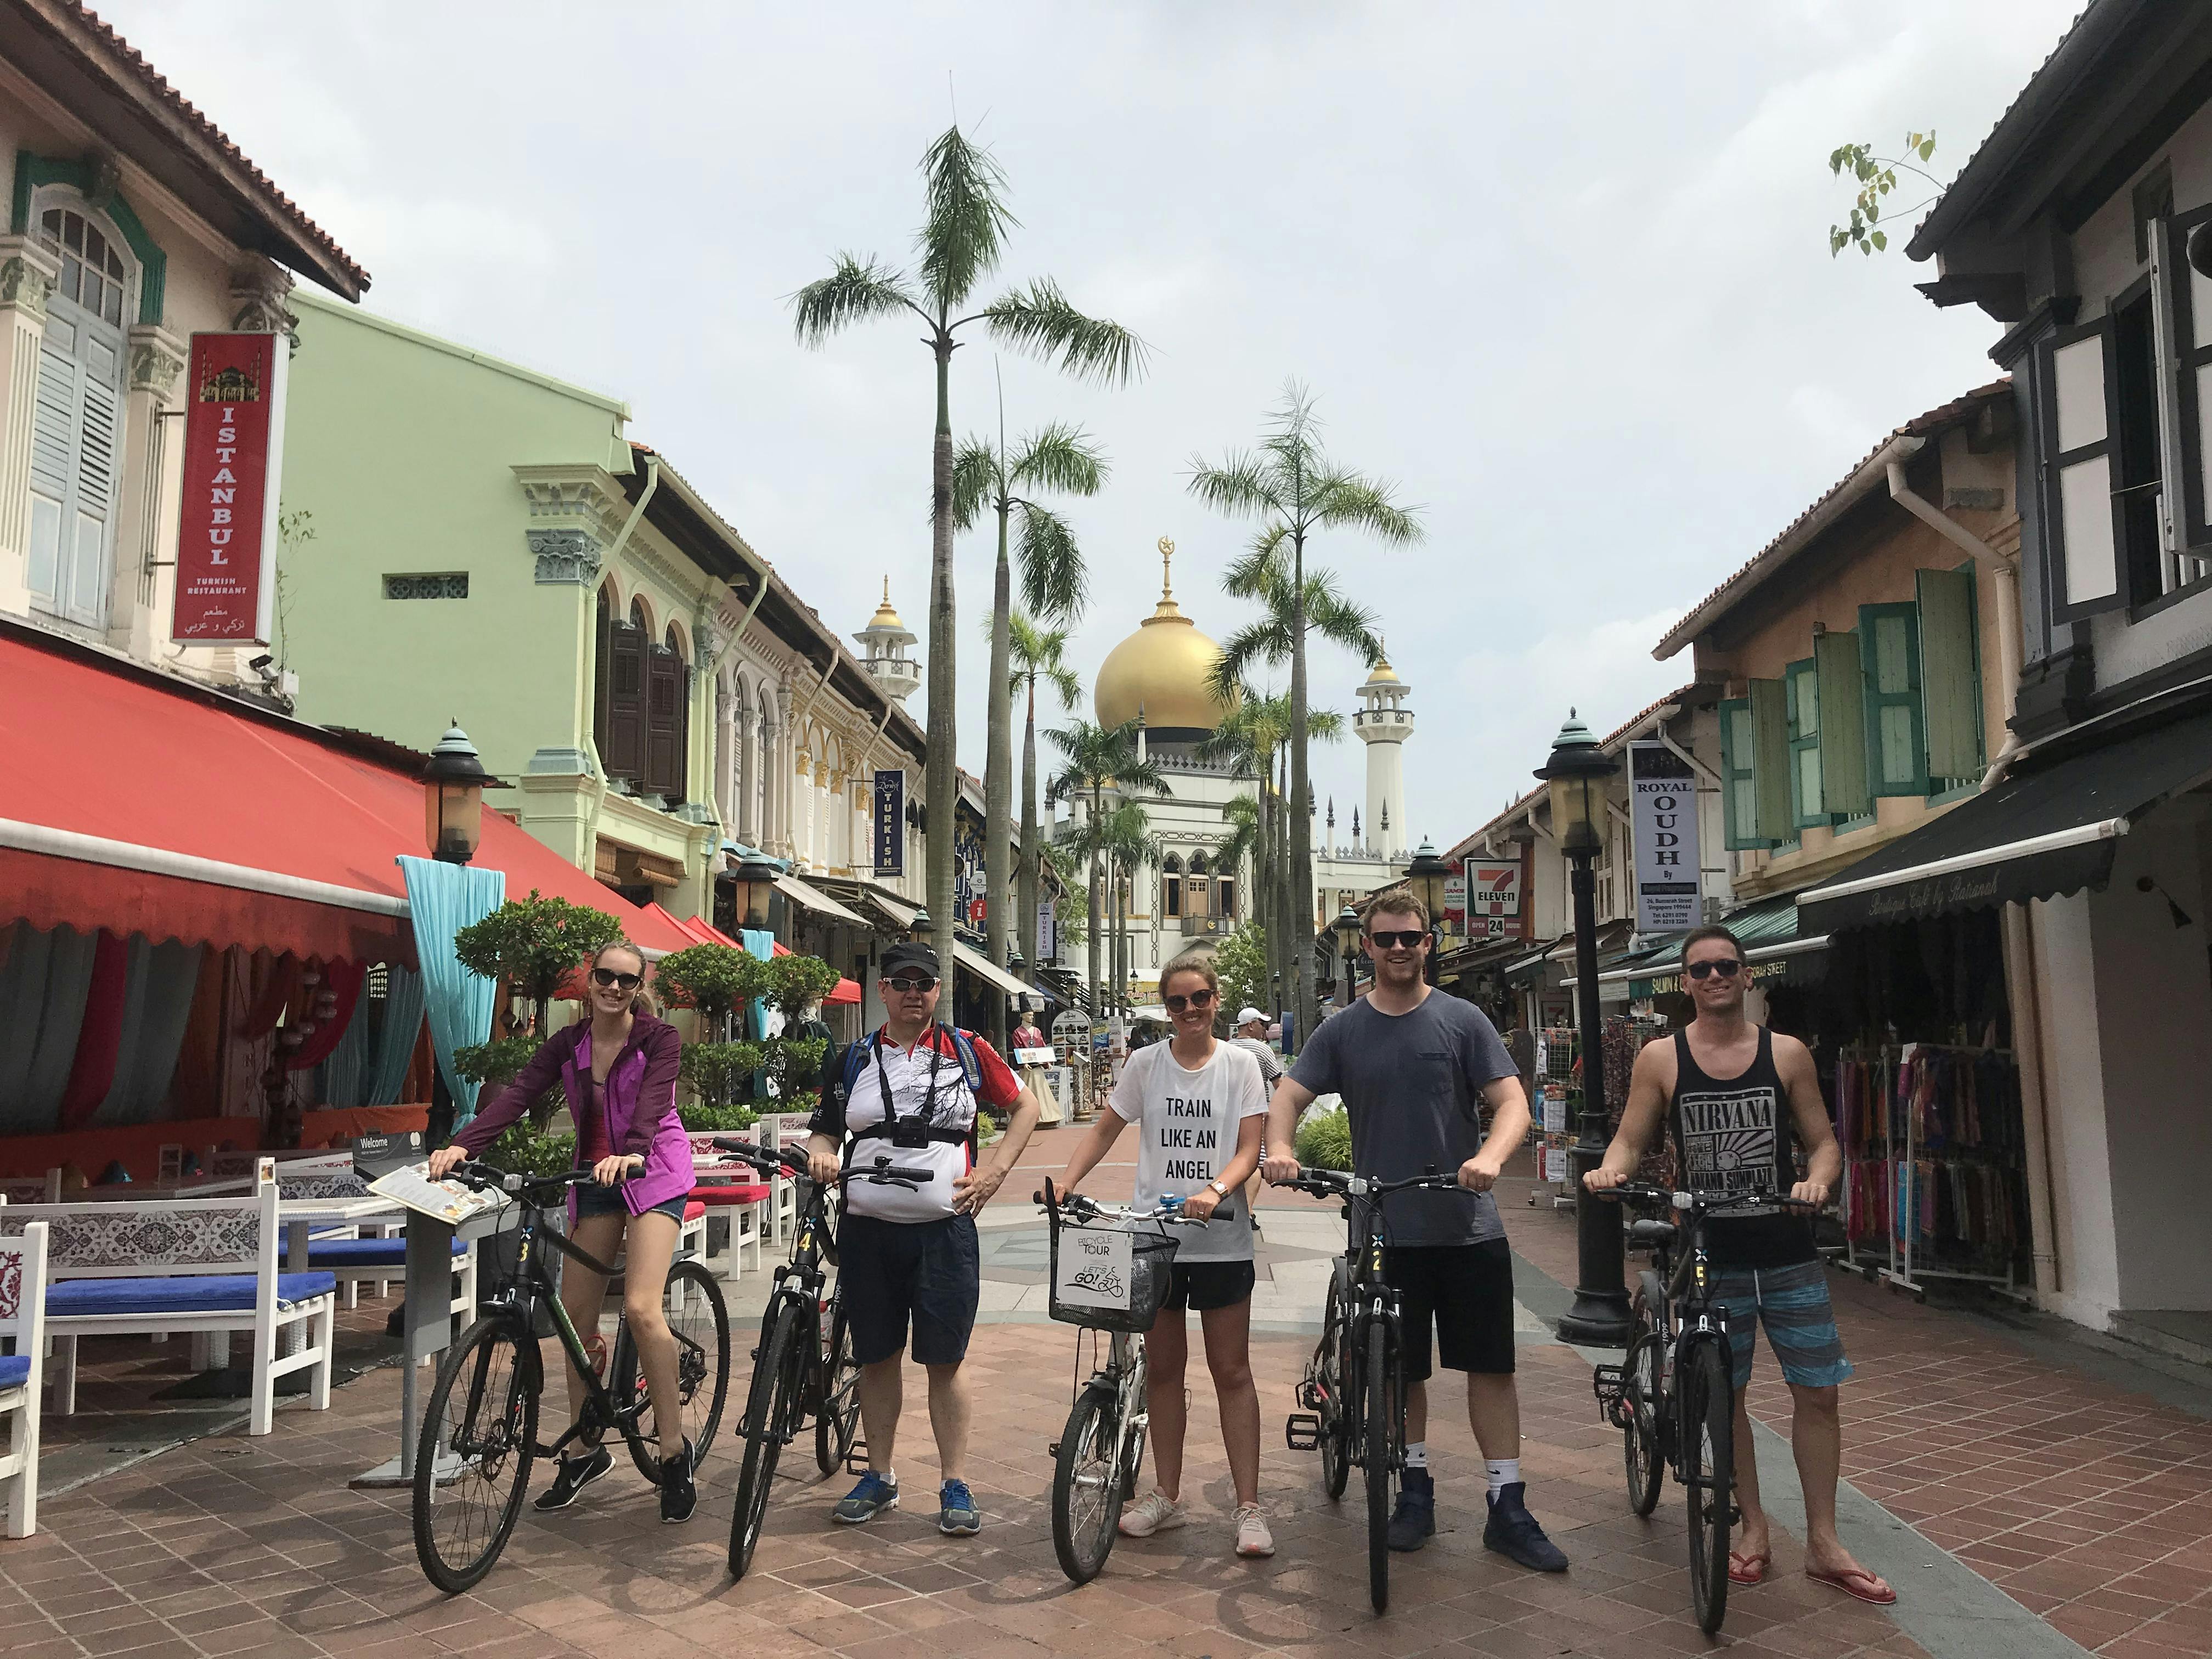 Passeio histórico de bicicleta em Cingapura